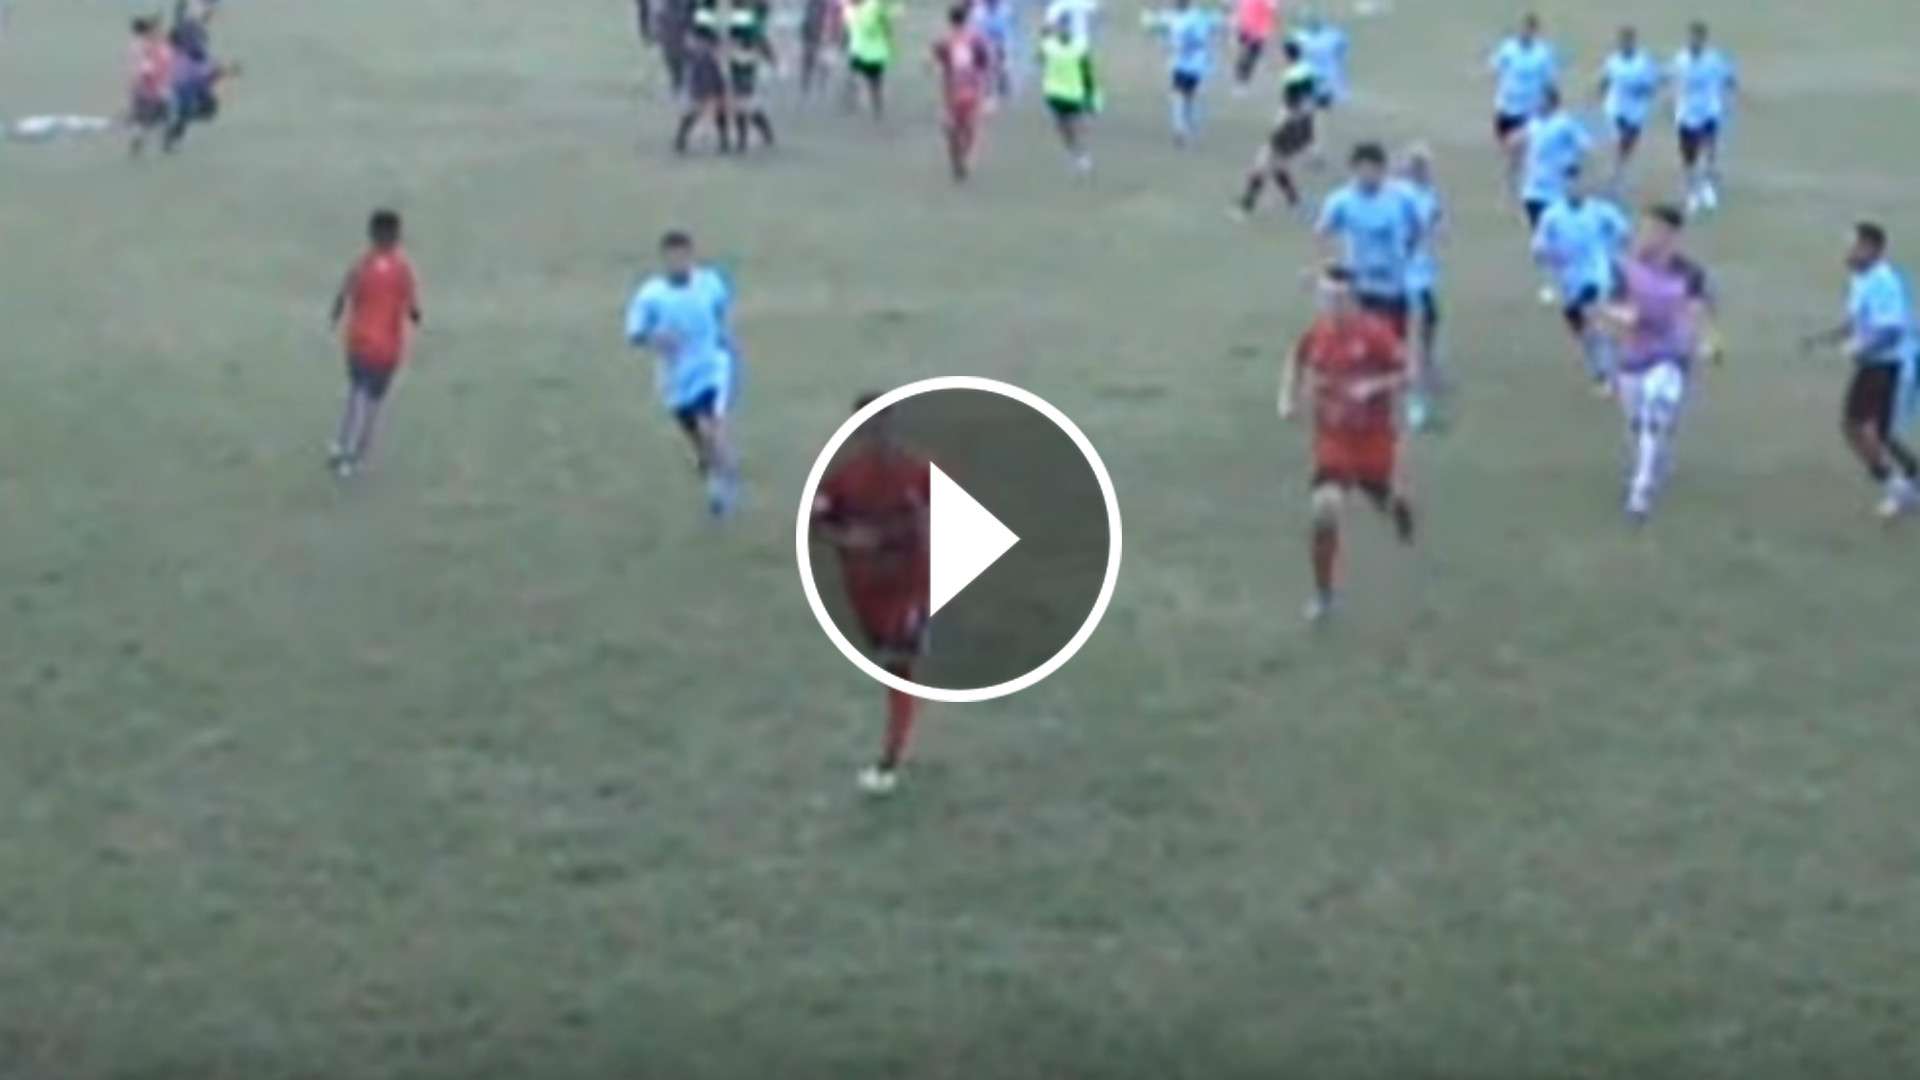 Futbol Tucumano Fight Video